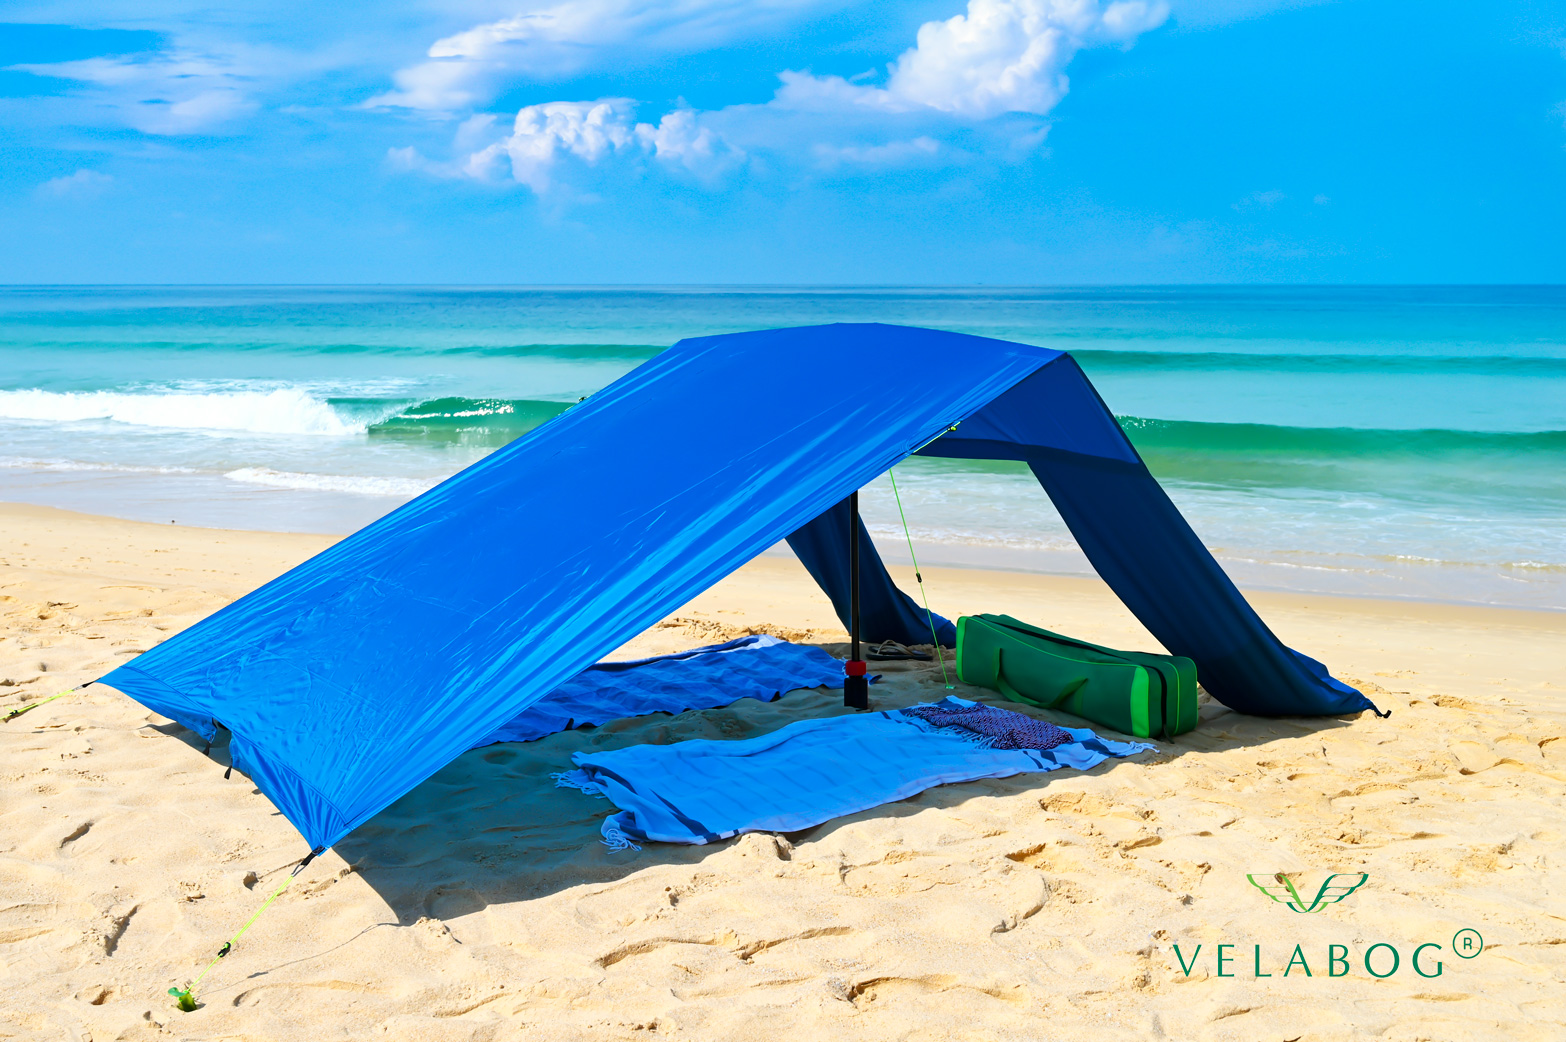 Toldo playa Velabog Breeze azul. La mejor refugio y protección solar para la playa en días sin viento. Mucha más sombra en comparación con sombrillas de playa. Mucho más aire en comparación con carpas de playa. Opción de montaje - días sin viento, con poco viento o racheado. Vista lateral.